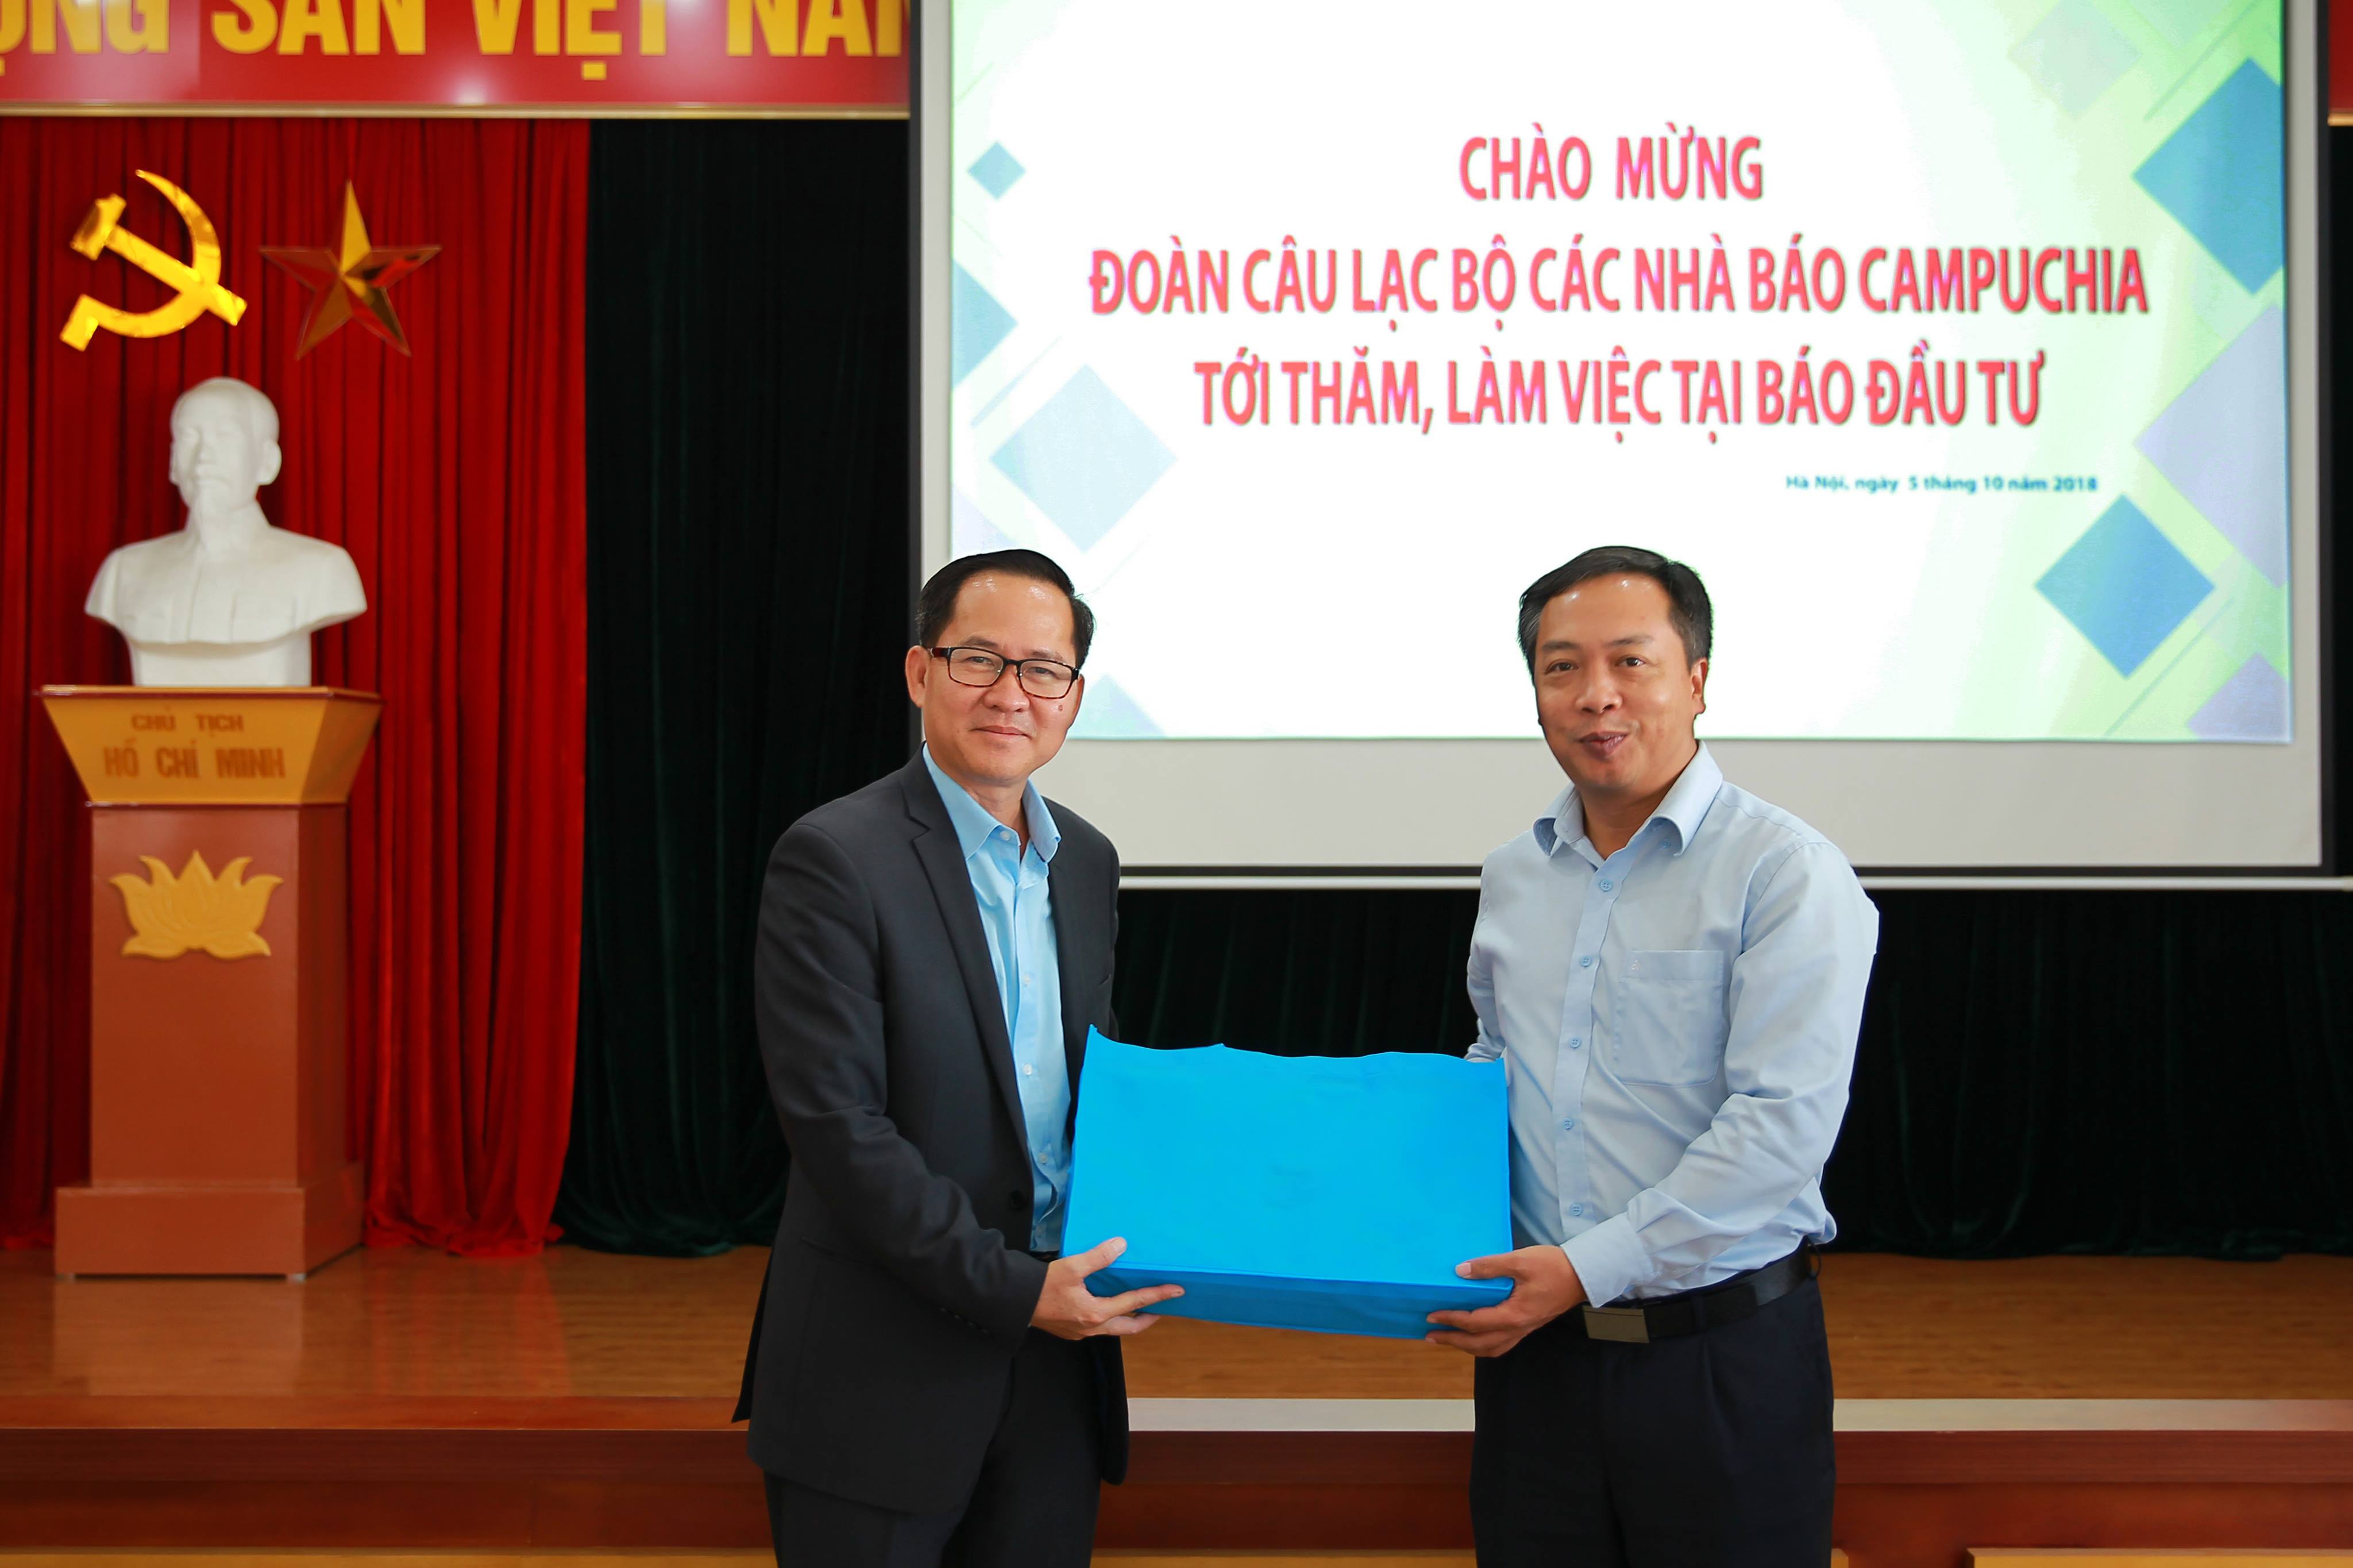 Tổng biên tập Lê Trọng Minh trao quà lưu niệm cho các nhà báo Campuchia